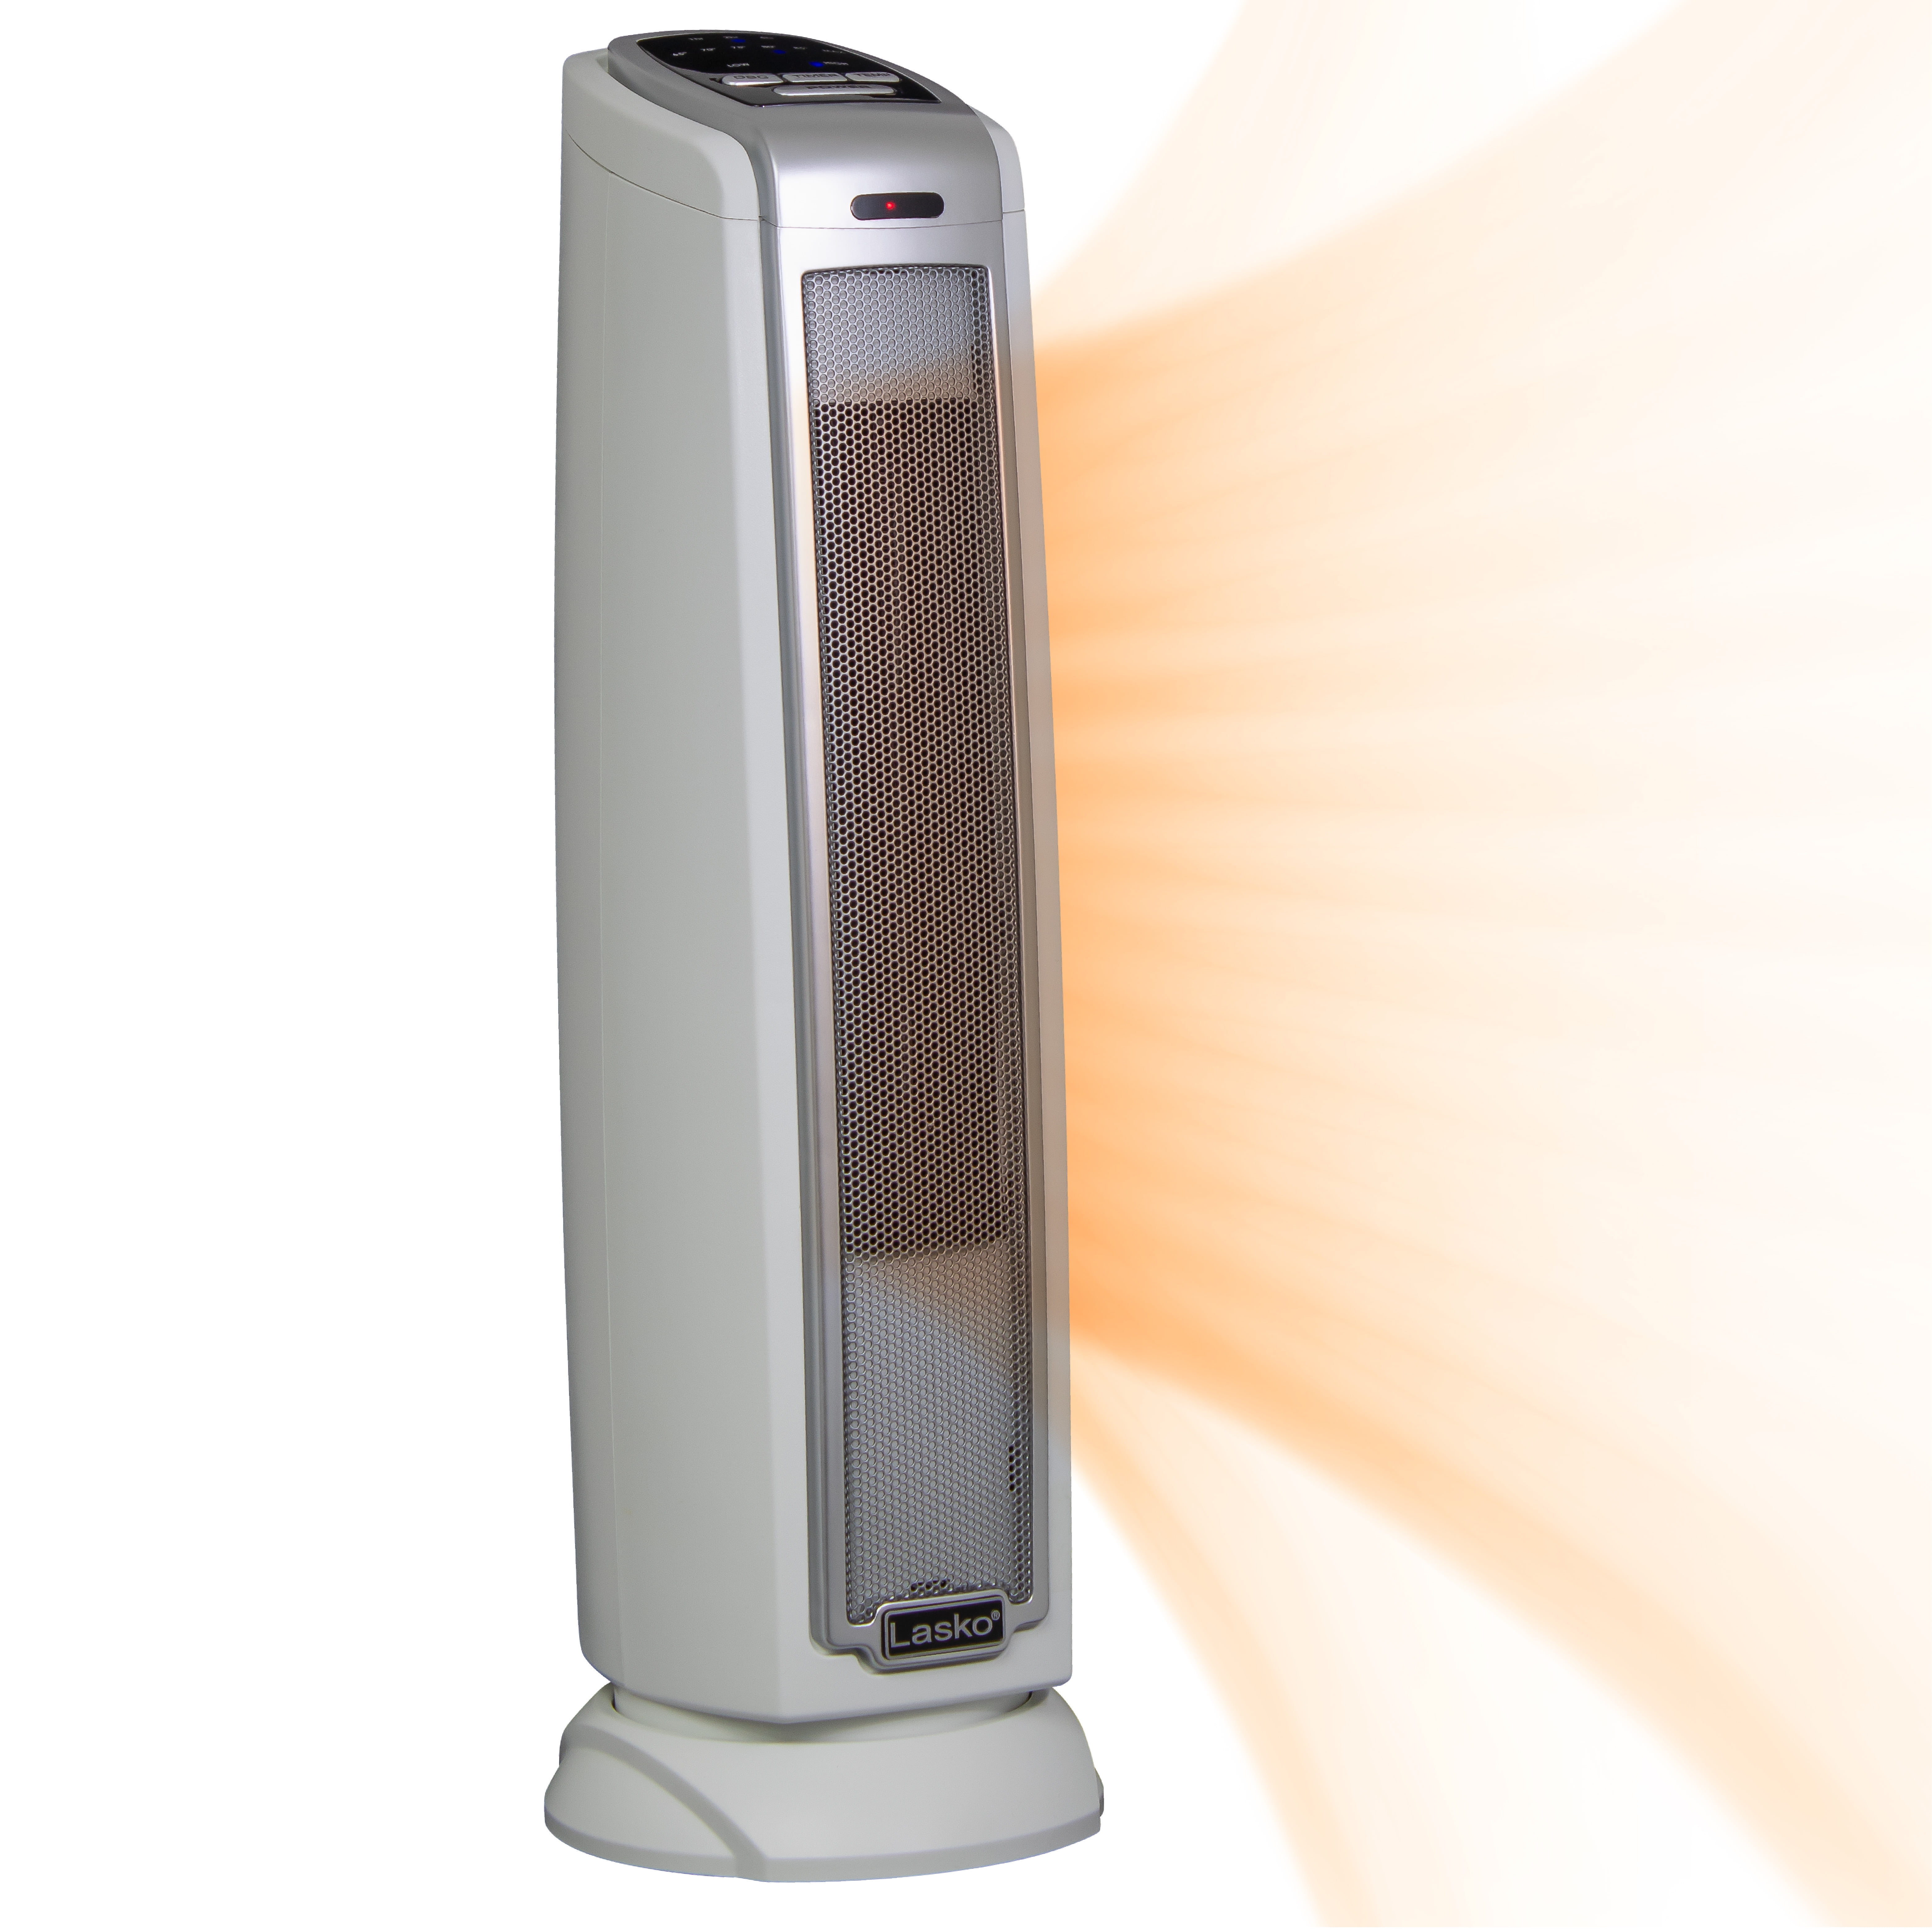 Airtech 1500 Watt Oscillating Ceramic Heater, Model# 02047